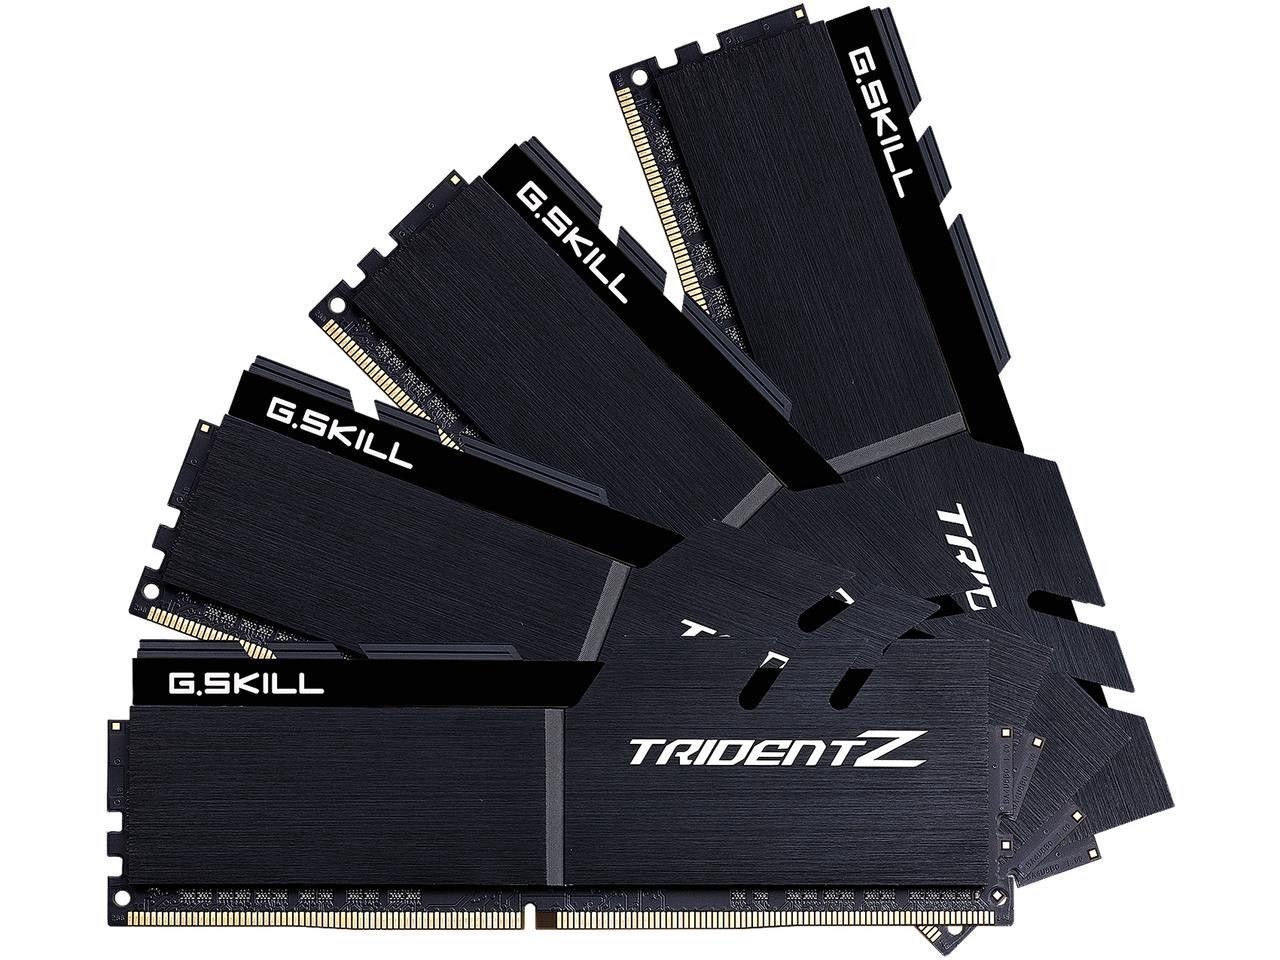 GSkill RAM TridentZ Series - 32 GB (4 x 8 GB Kit) - DDR4 3600 DIMM CL16 <p>Basierend auf dem starken Erfolg der Trident-Serie repräsentiert die Trident Z-Serie eine